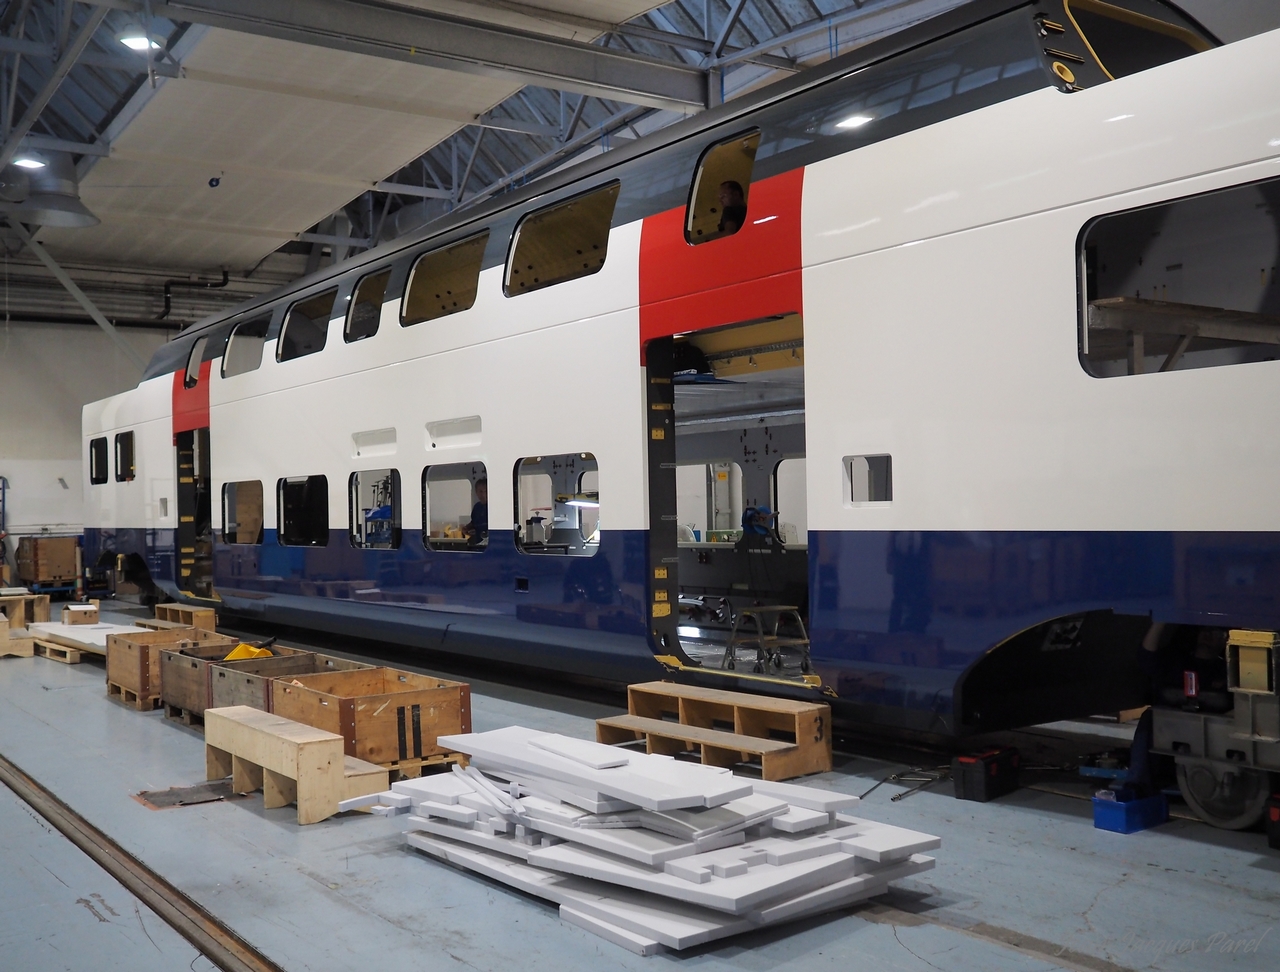 Visite chez Stadler, fabricant suisse de matériel ferroviaire, le 5.10.2015 à Altenrhein (SG/Suisse) 12_stadler14b1280-510bfcc